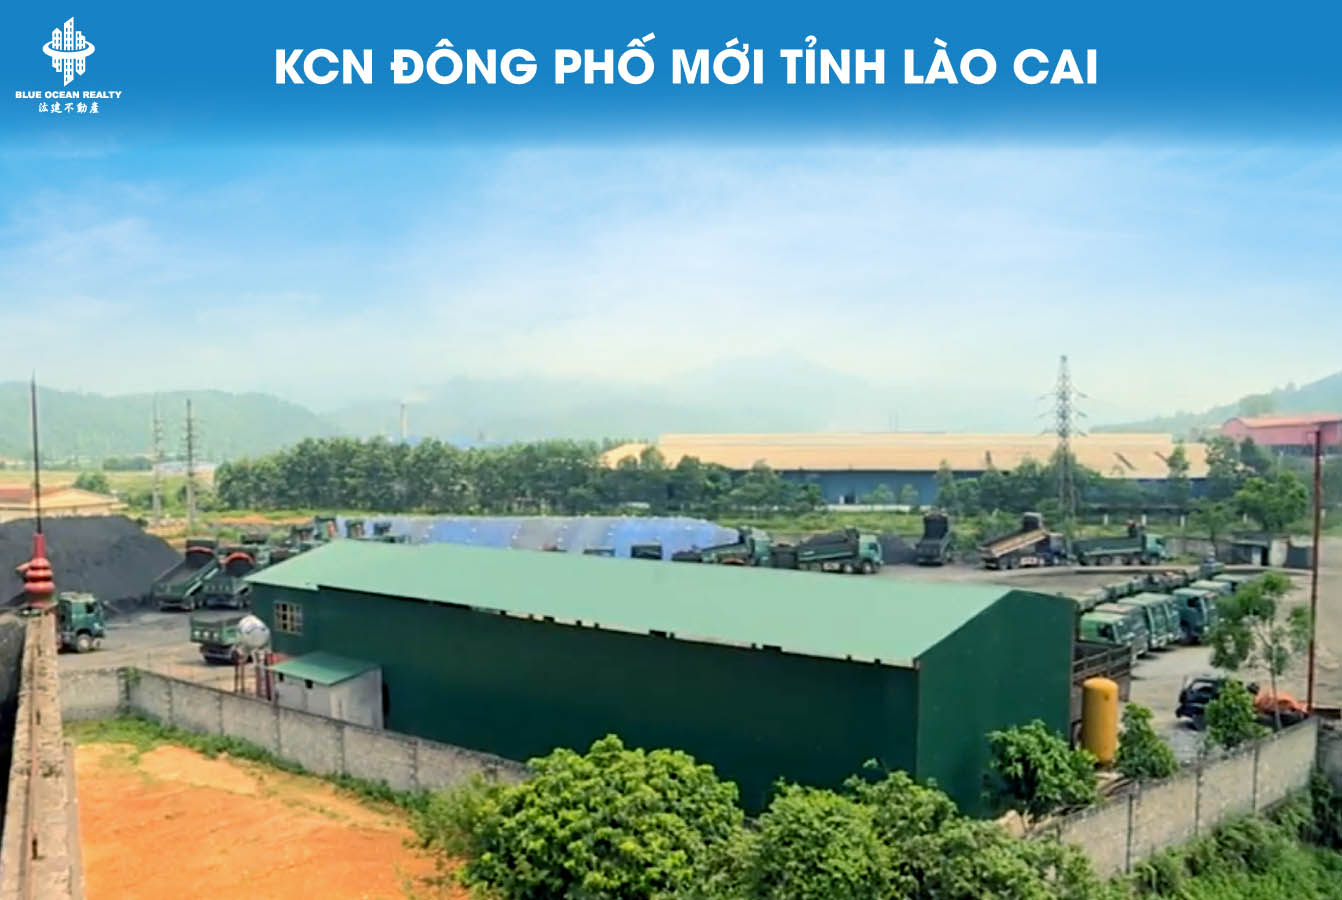 Khu công nghiệp Đông Phố Mới tỉnh Lào Cai